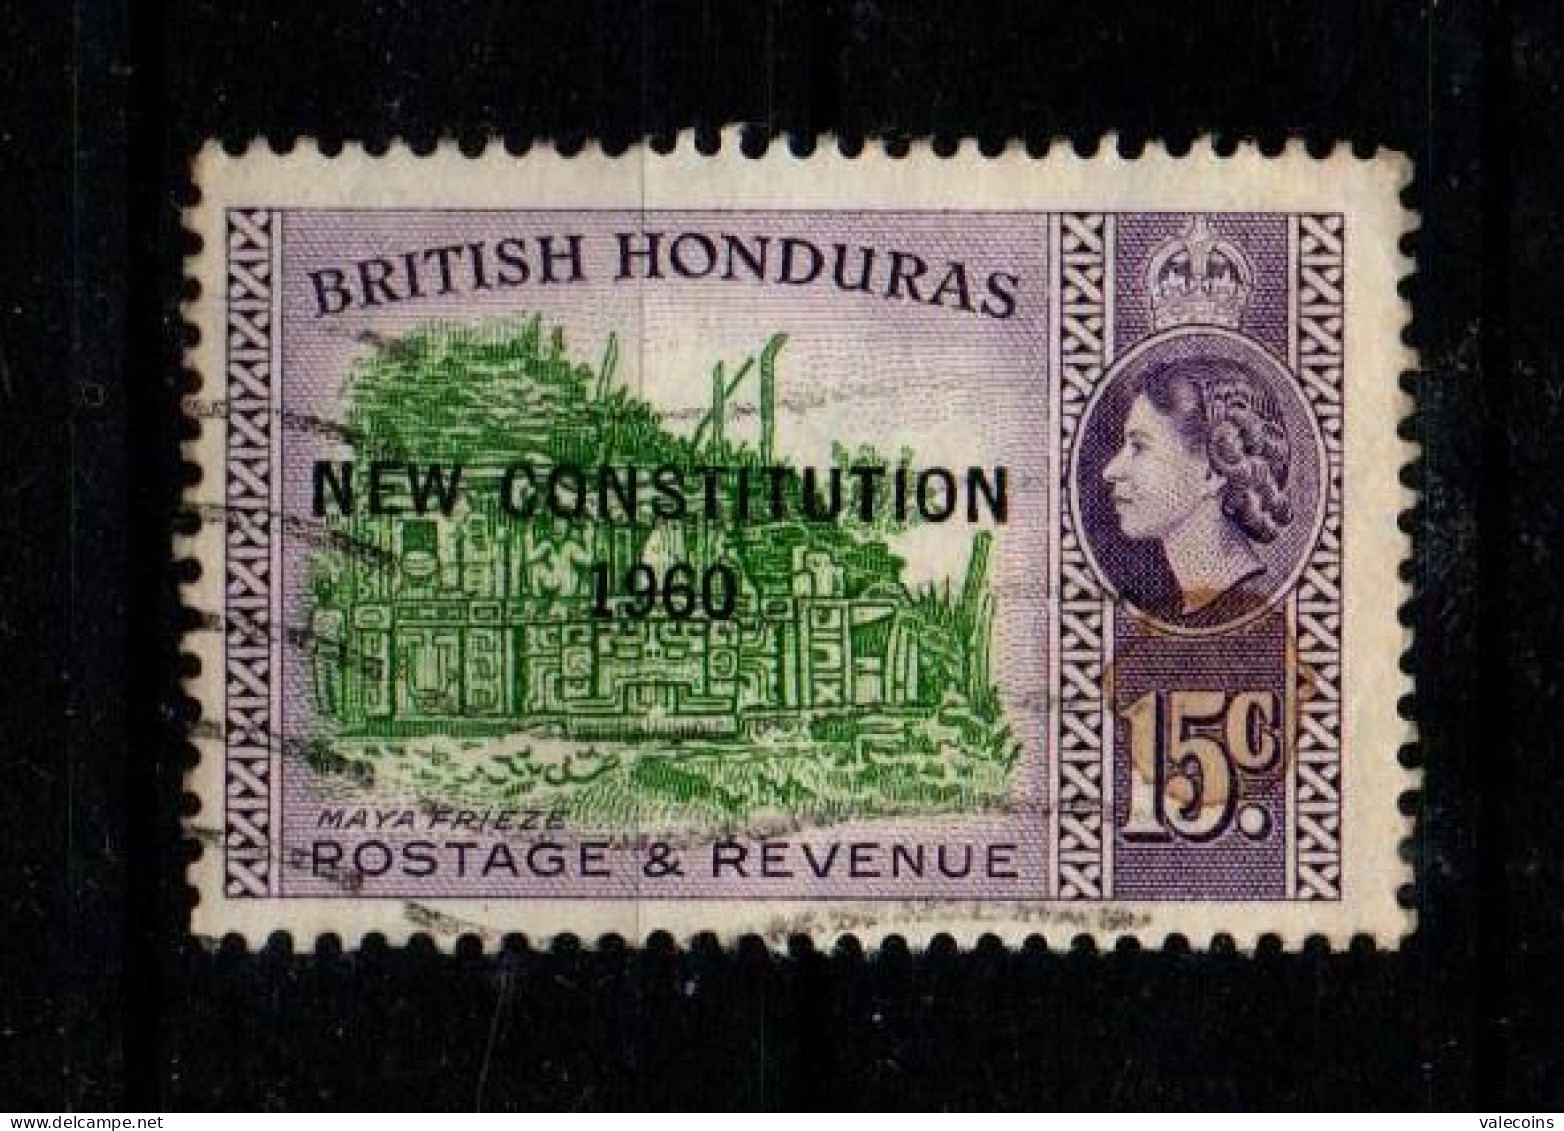 BRITISH HONDURAS (BELIZE) - 1961 - 15 Cent - New Constitution 1960 - Queen Elizabewth II - Used Stamp         MyRef:L - Honduras Británica (...-1970)